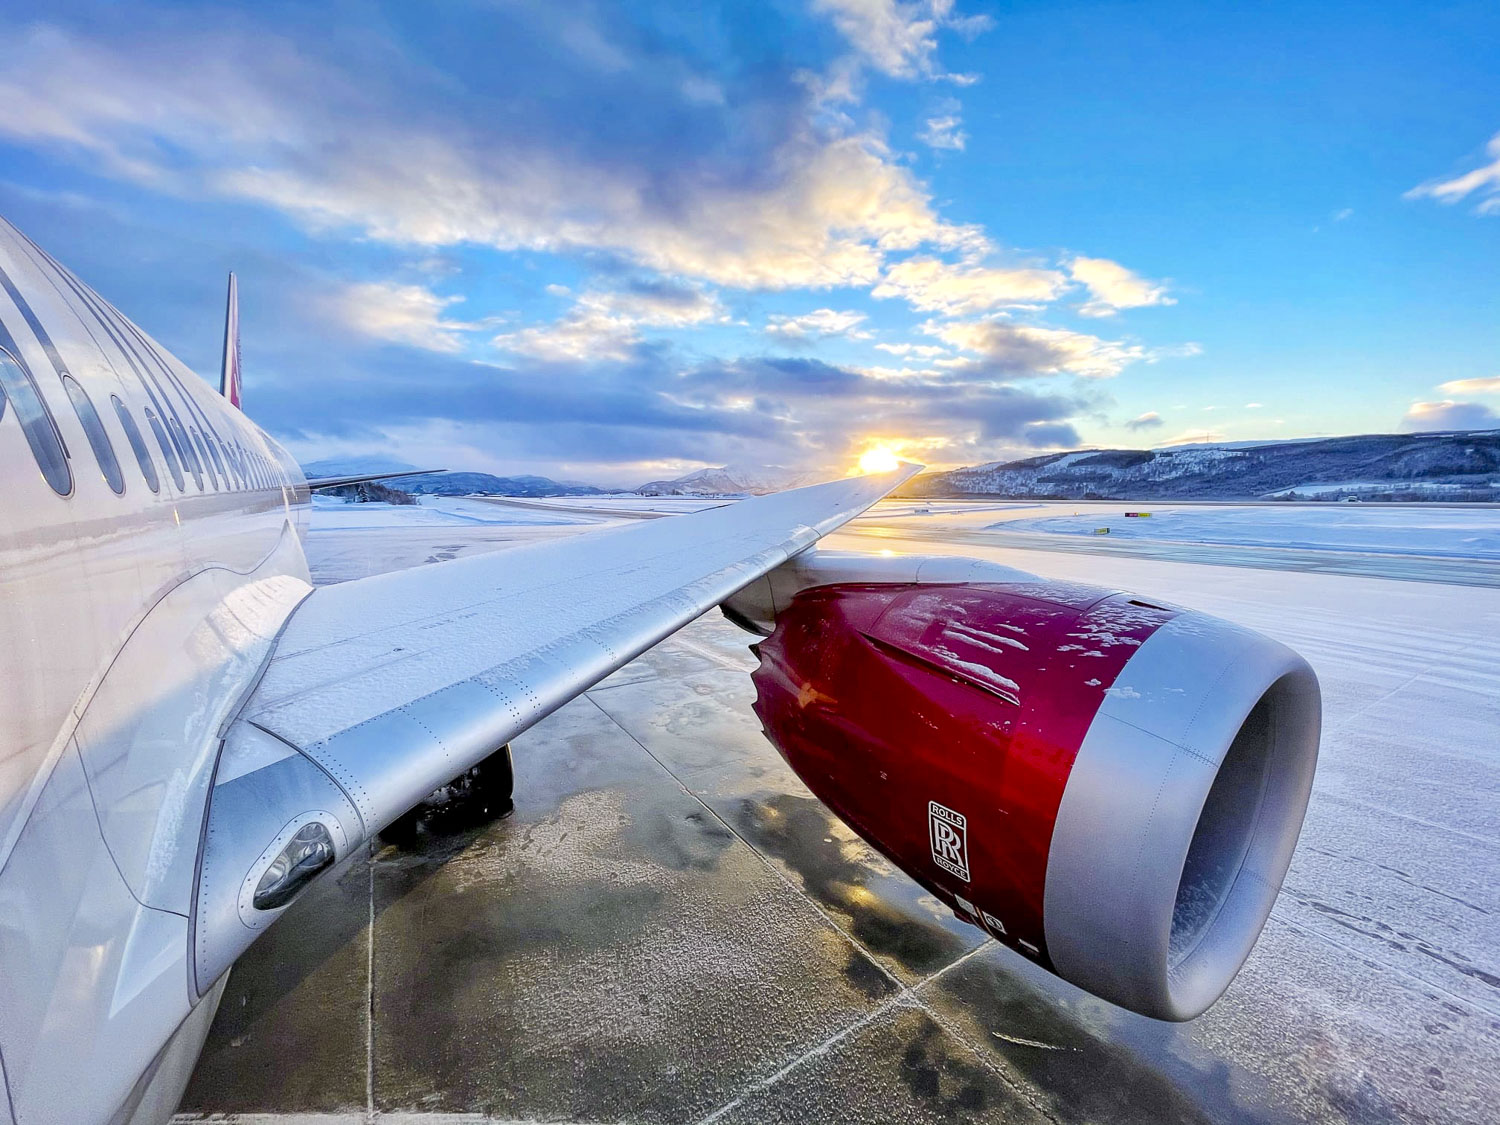 Virgin Atlantic aircraft